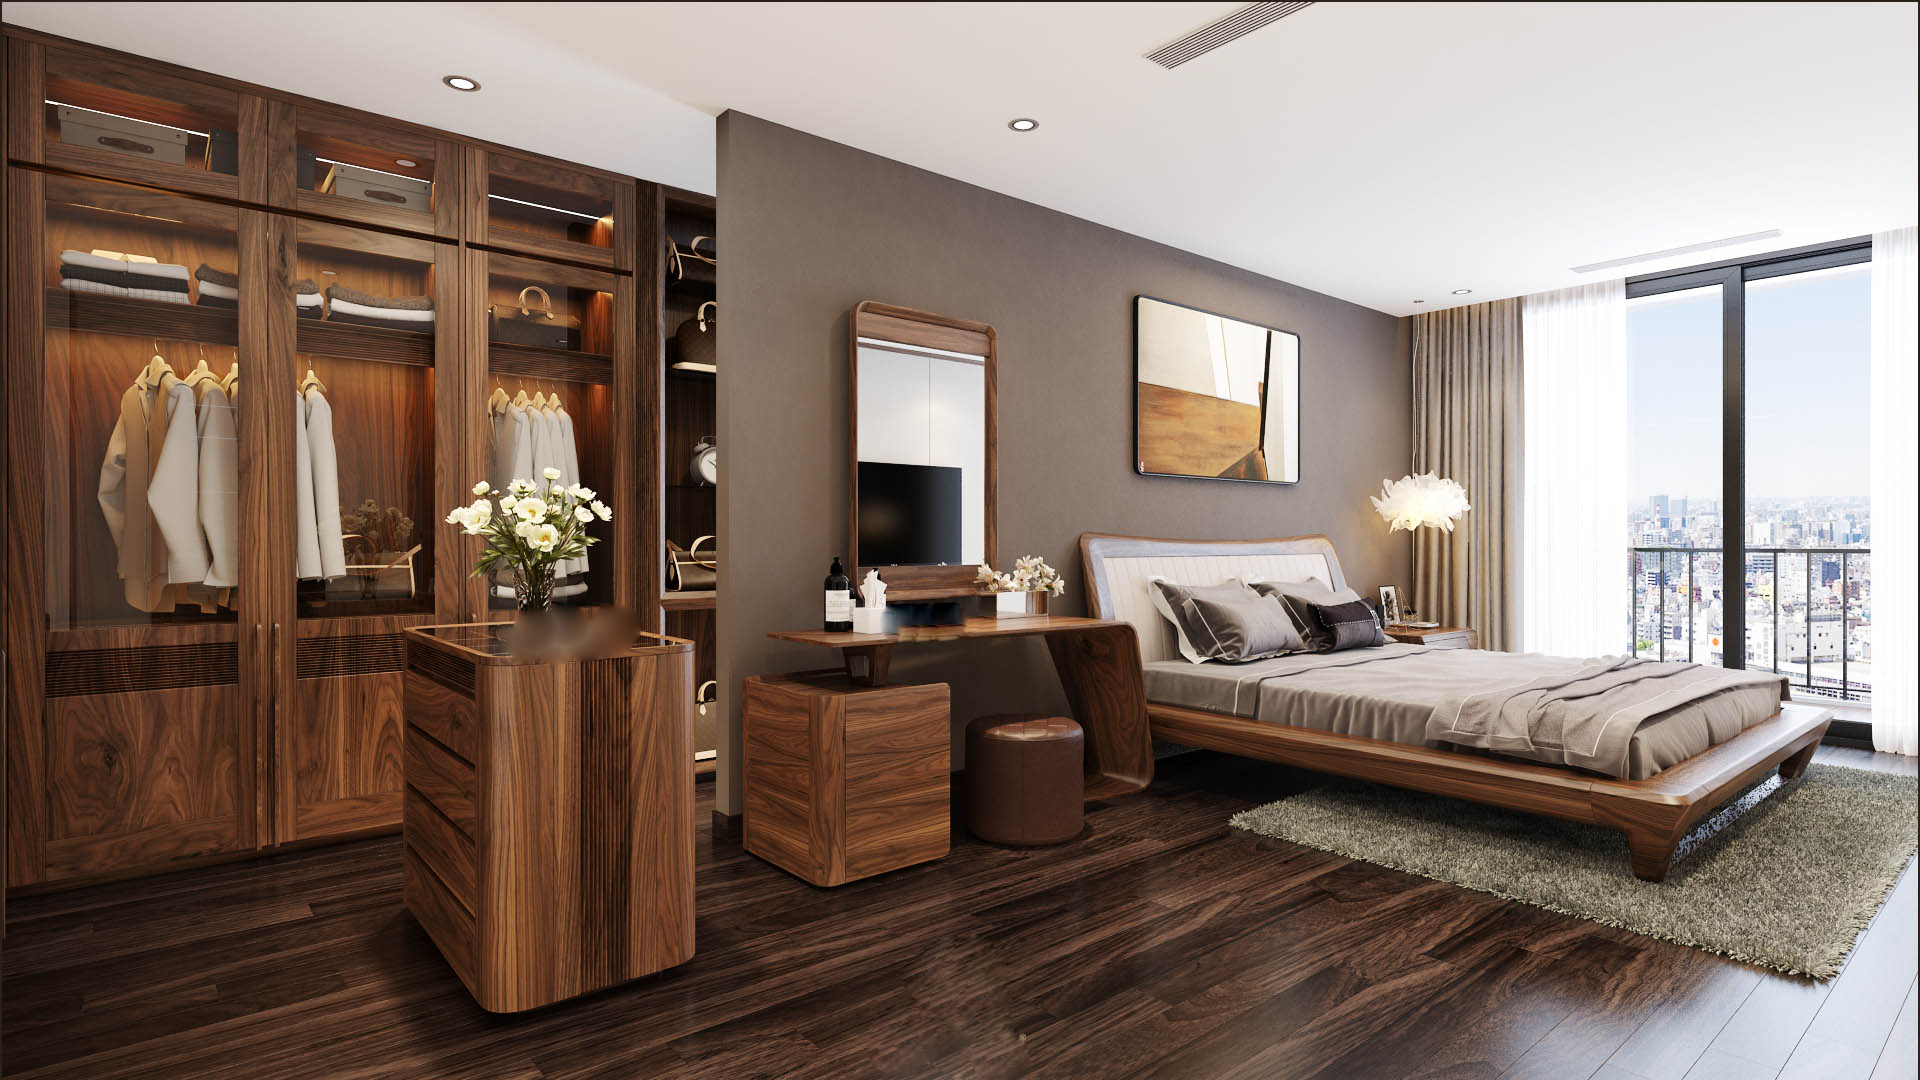 Mẫu giường gỗ đẹp nhất hiện nay cho phòng ngủ hiện đại